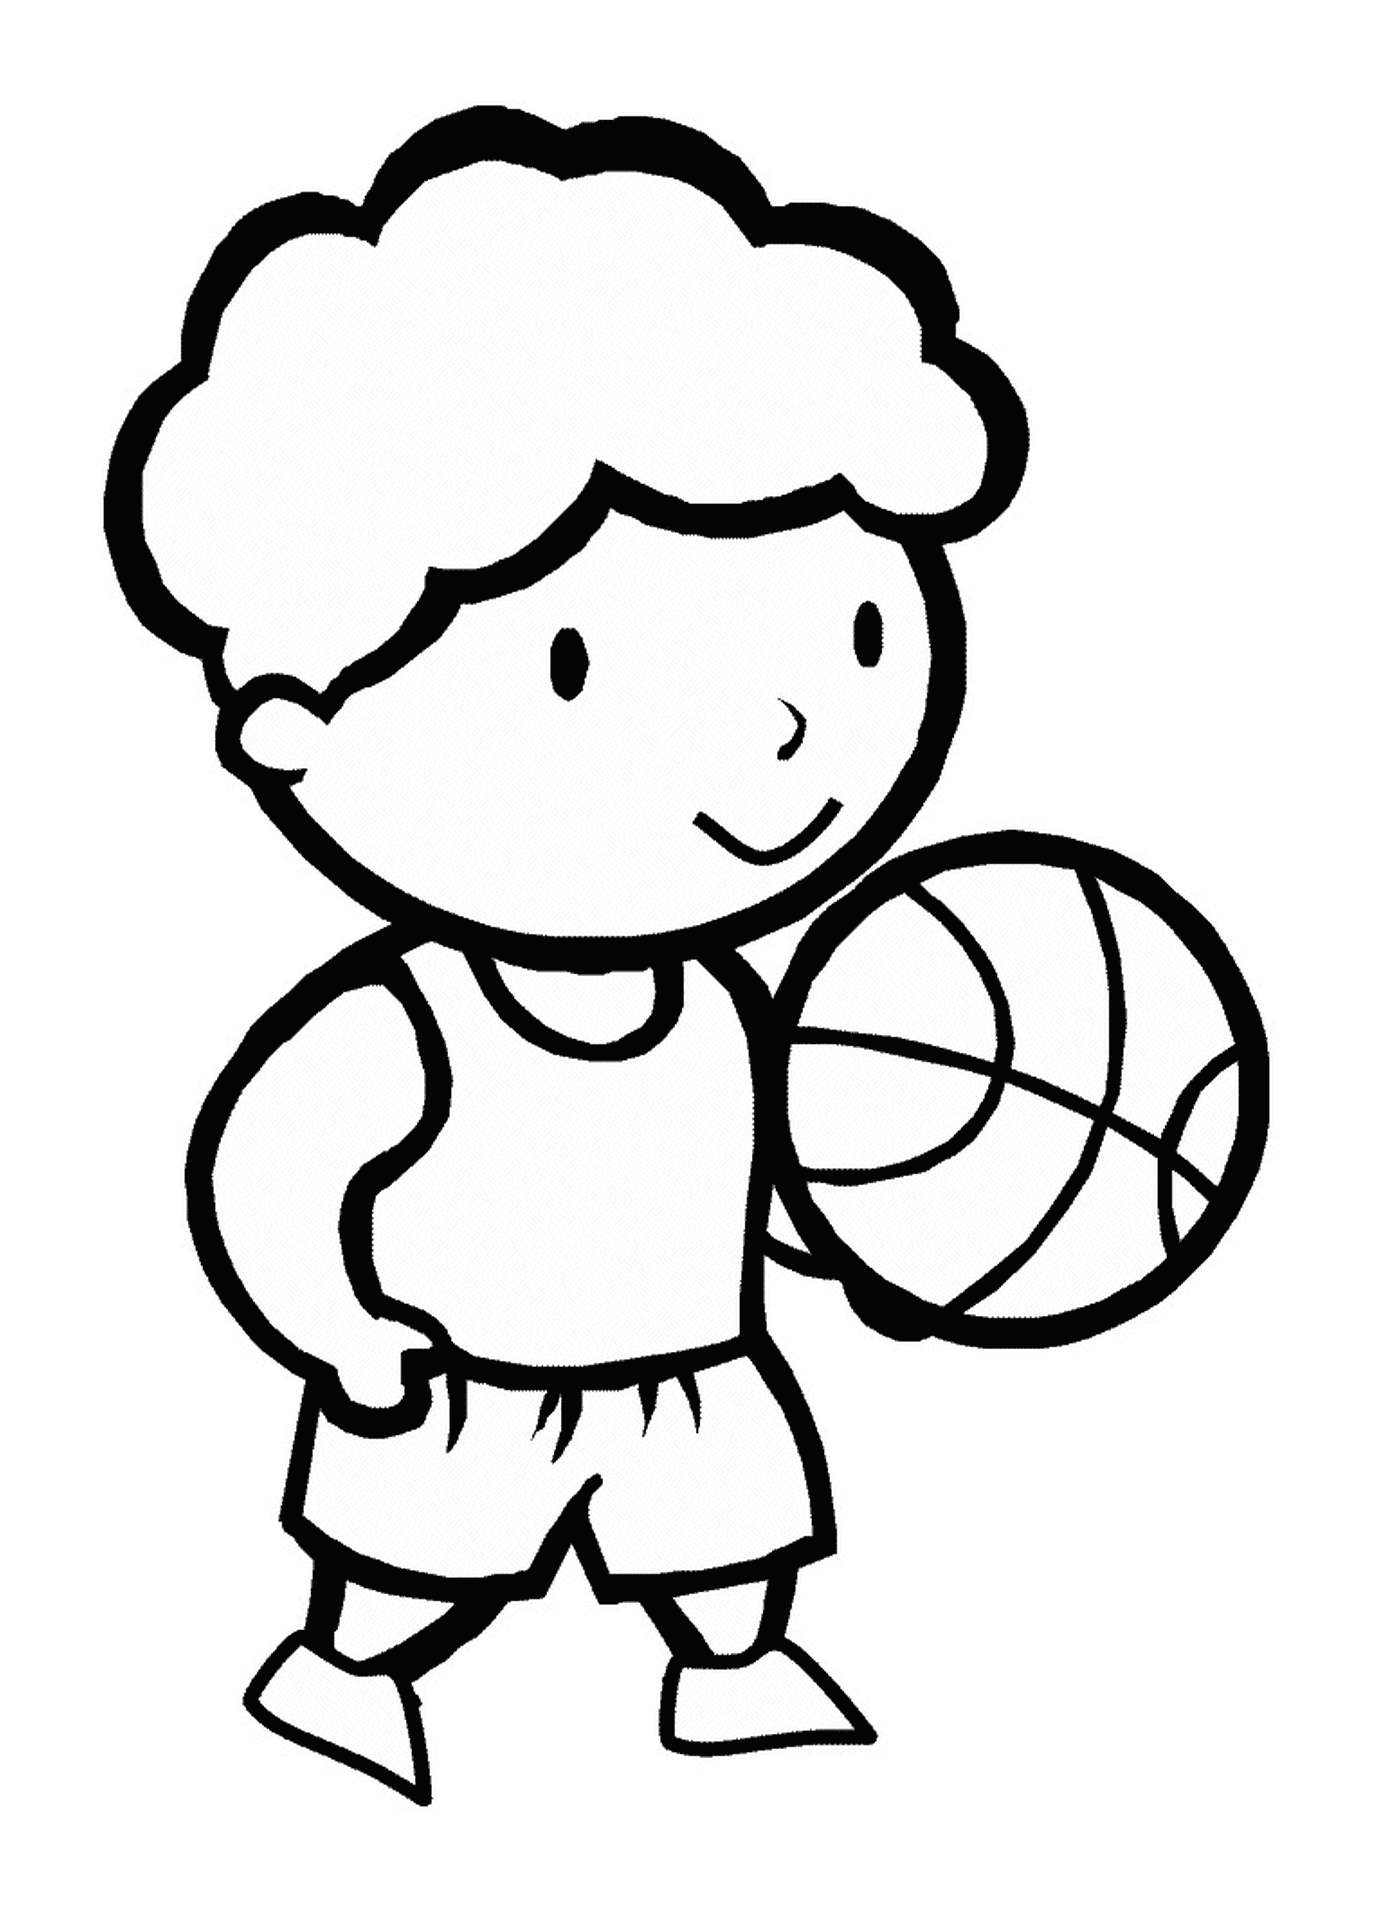  Un jugador de baloncesto 